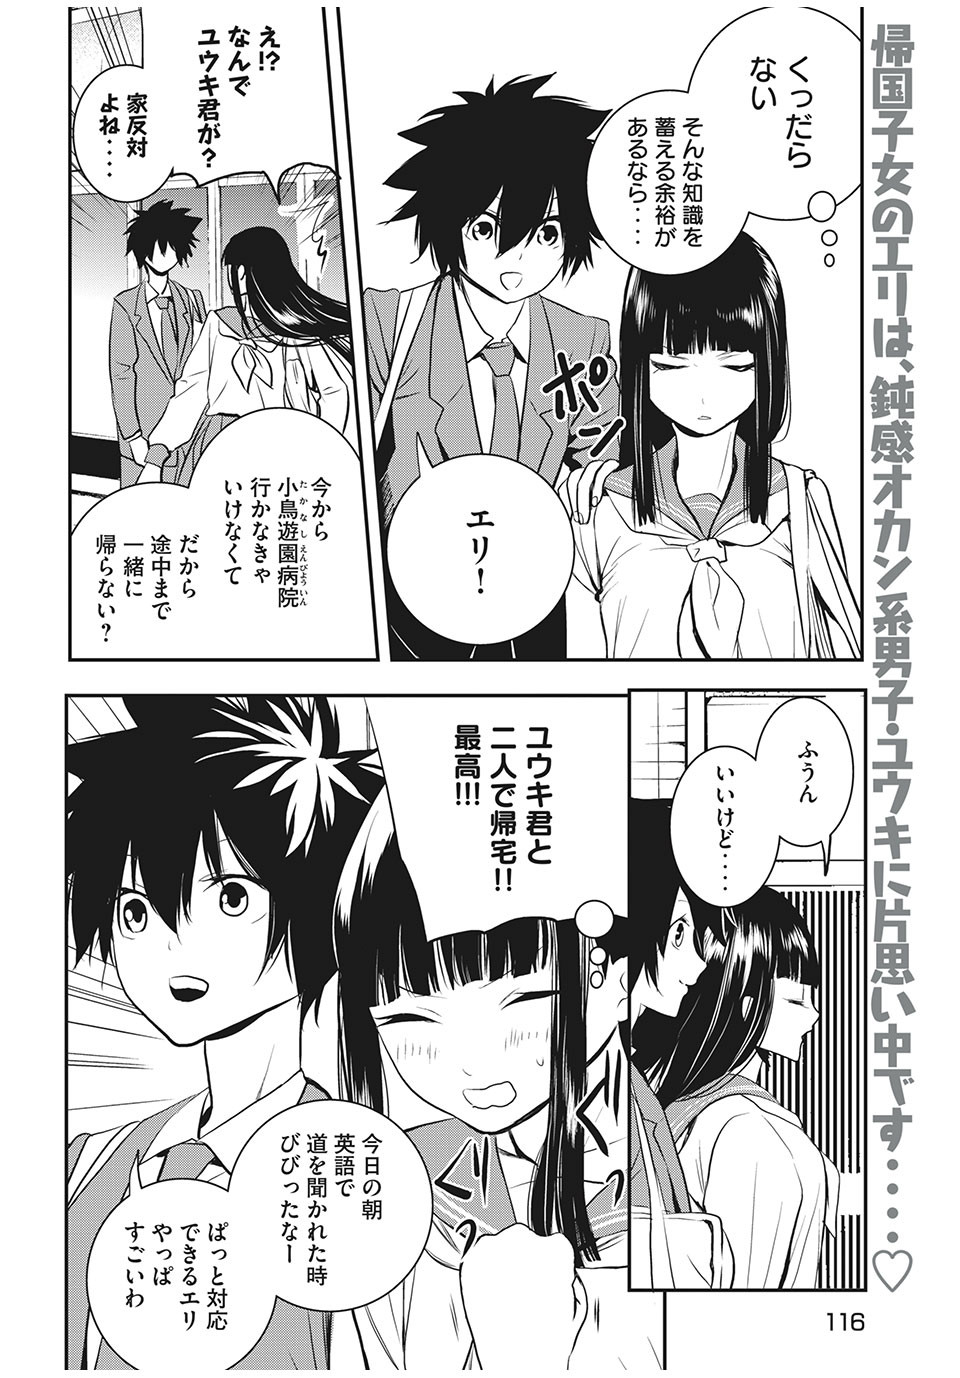 Eigo ×× Sensei - Chapter 15 - Page 2